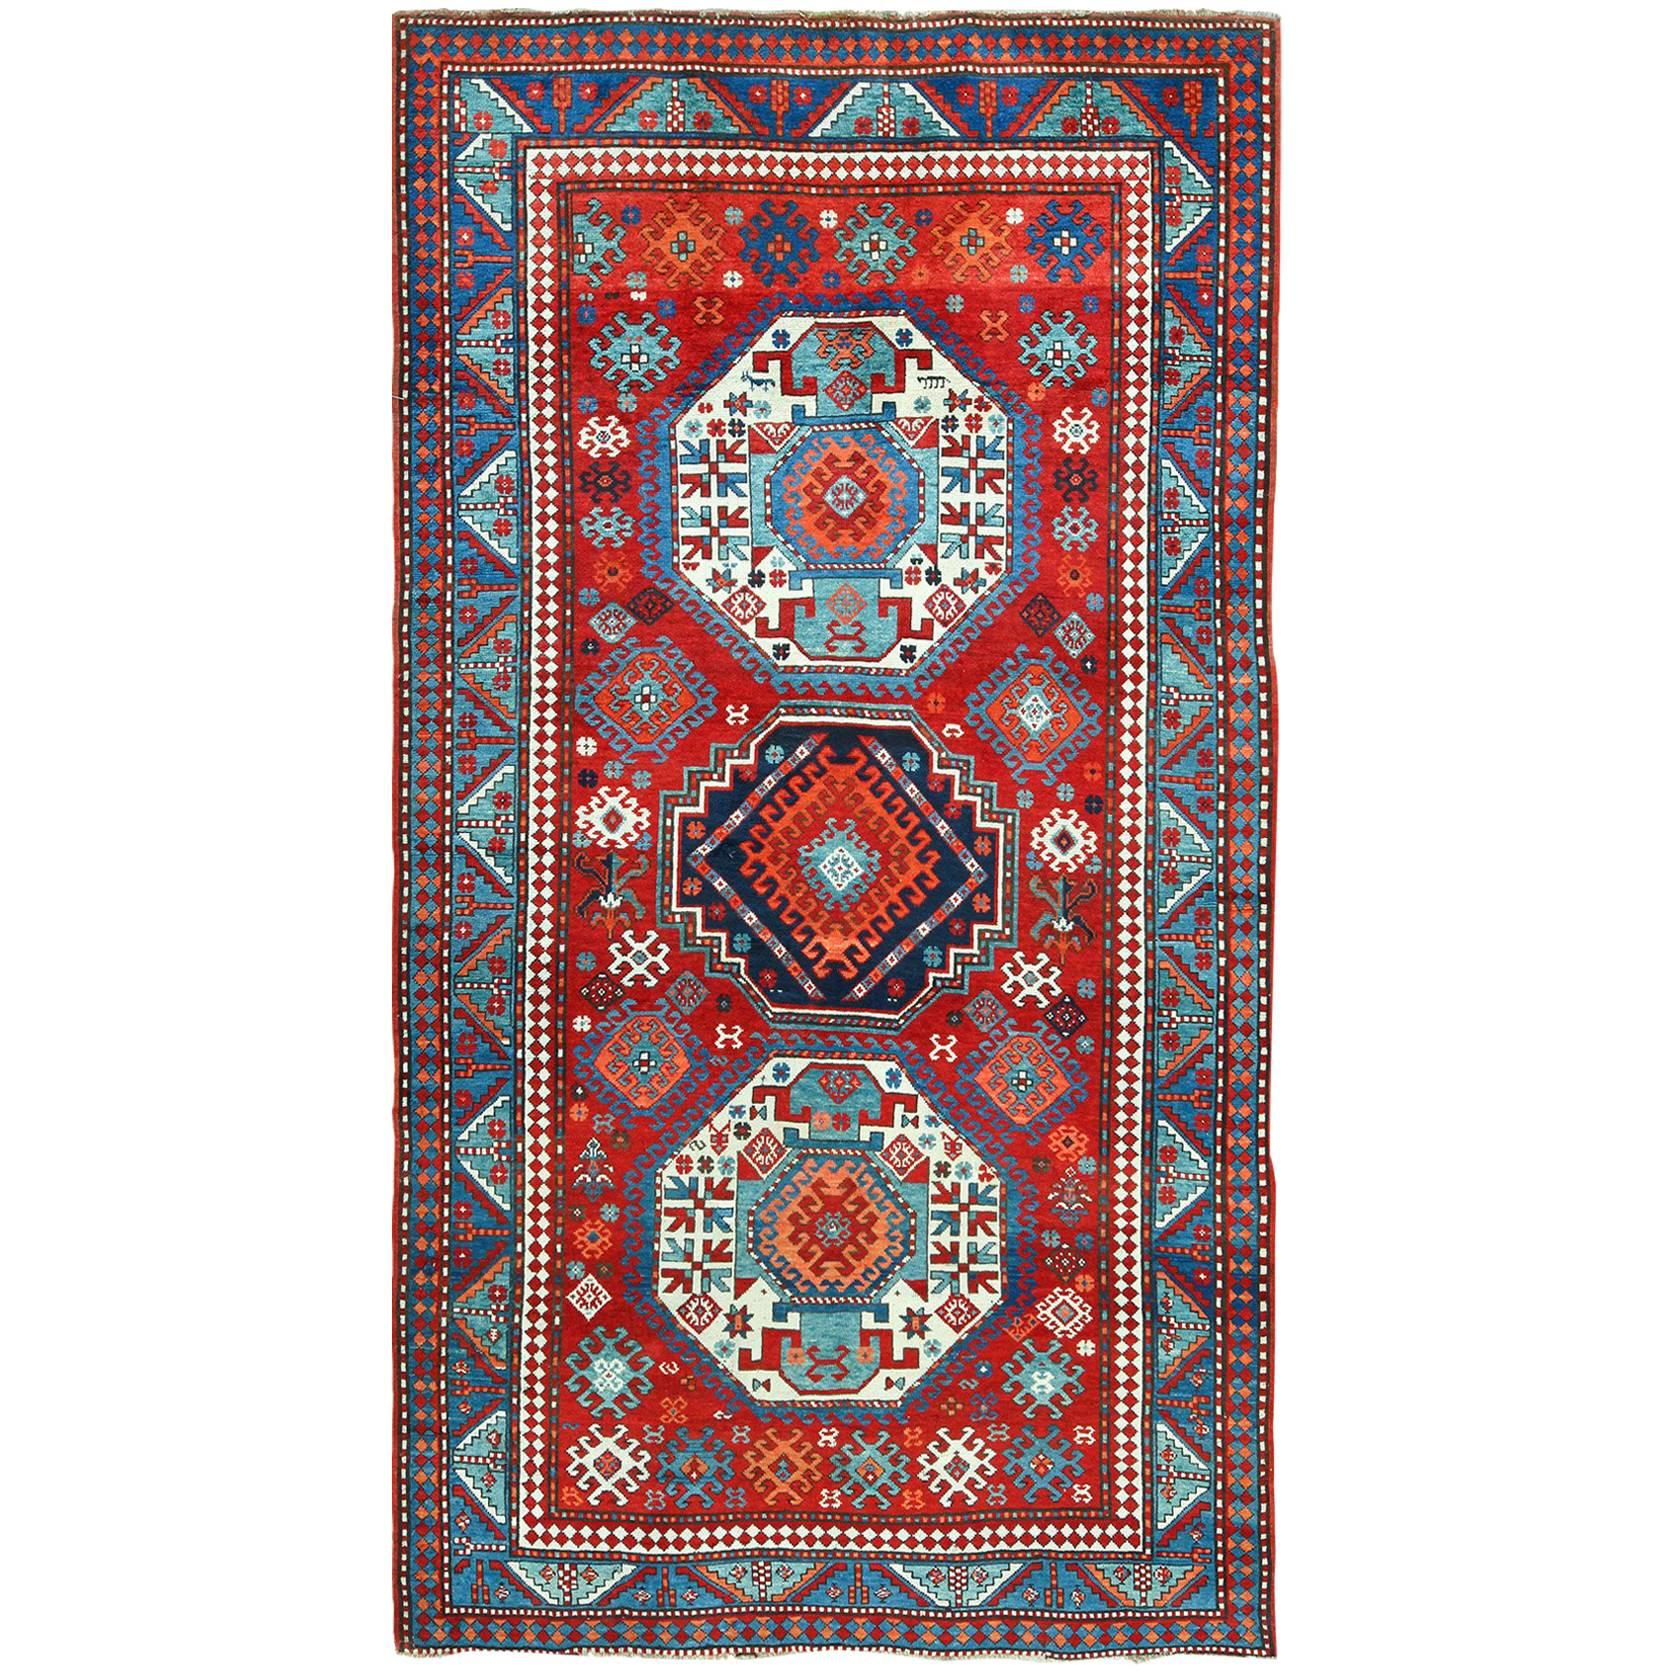 Antique Lori Pemback Design Kazak Caucasian Rug